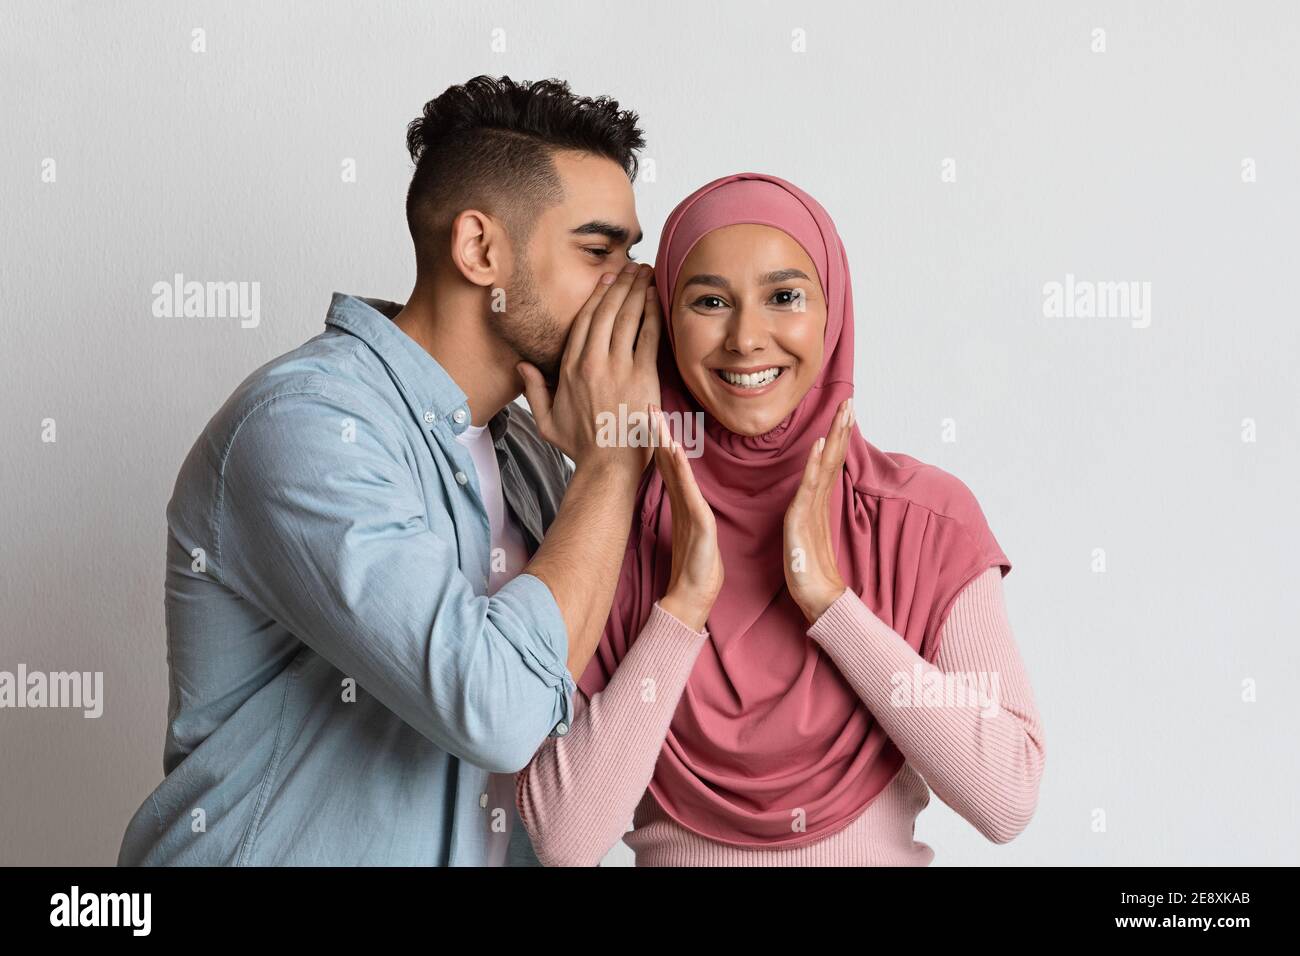 Gossips concept. Un homme arabe joyeux chuchote quelque chose dans l'oreille de sa petite amie musulmane Banque D'Images